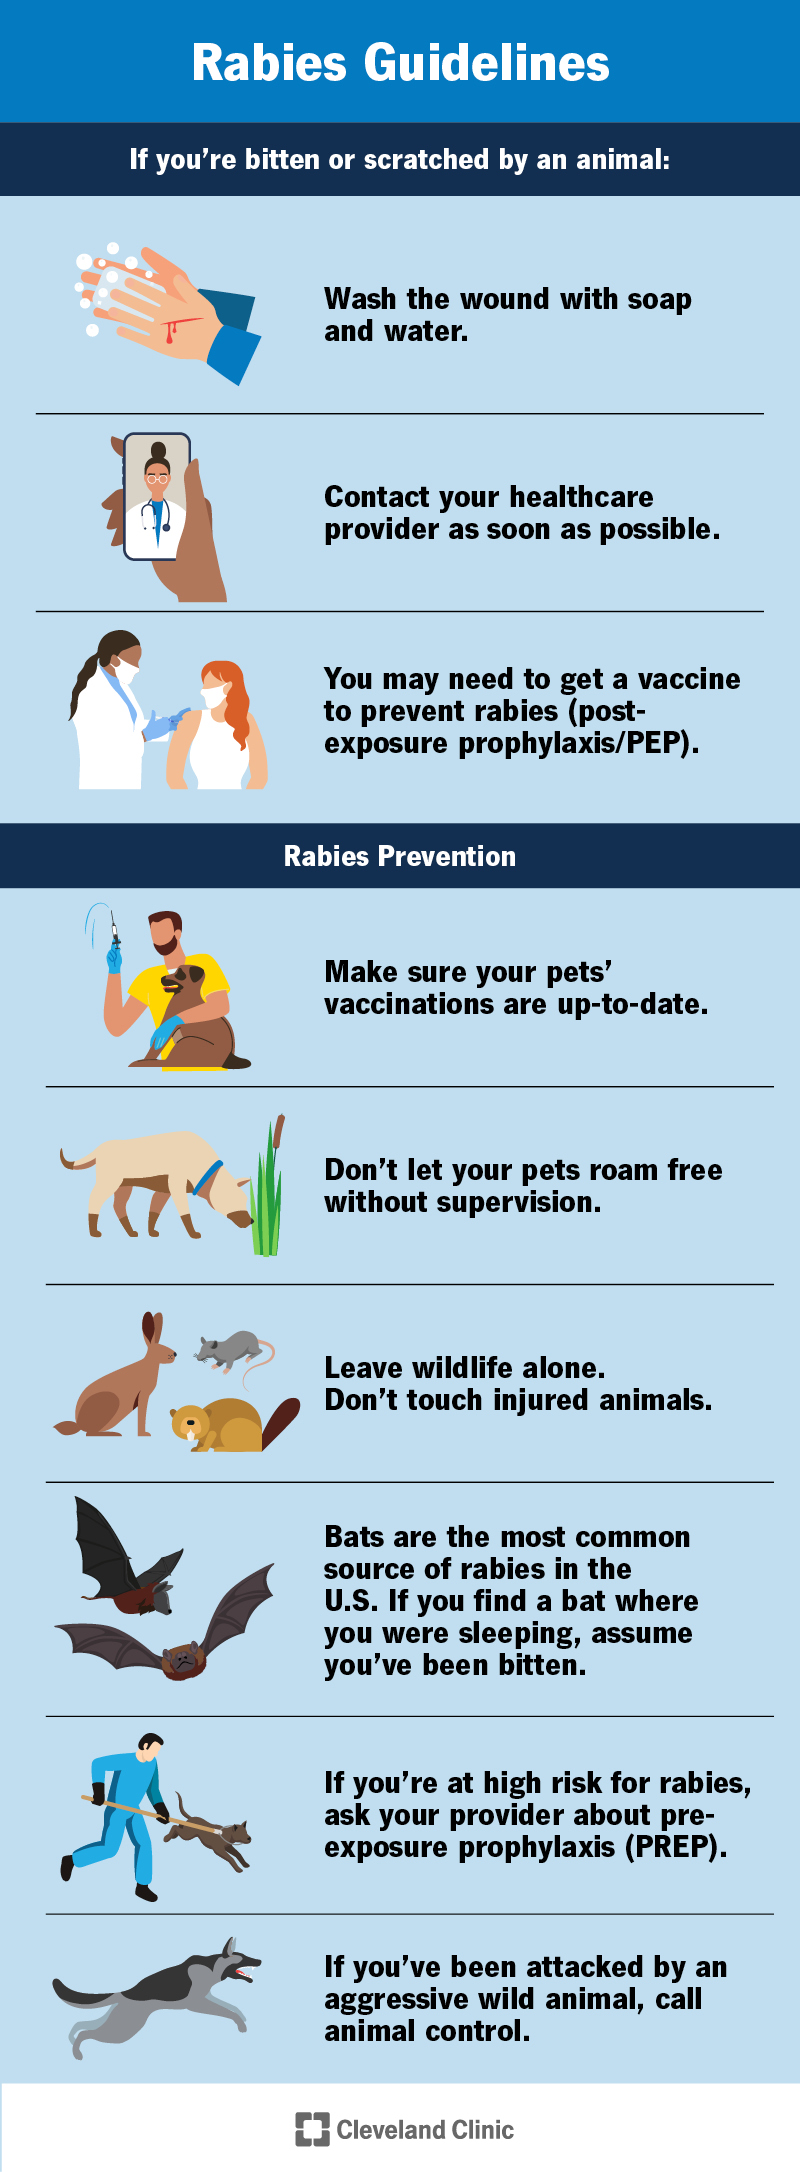 Suggerimenti per la prevenzione della rabbia.  Pulisci tutte le ferite.  Chiedi al tuo fornitore se hai bisogno di un vaccino antirabbico.  Lascia stare la fauna selvatica.  Vaccinare gli animali domestici.